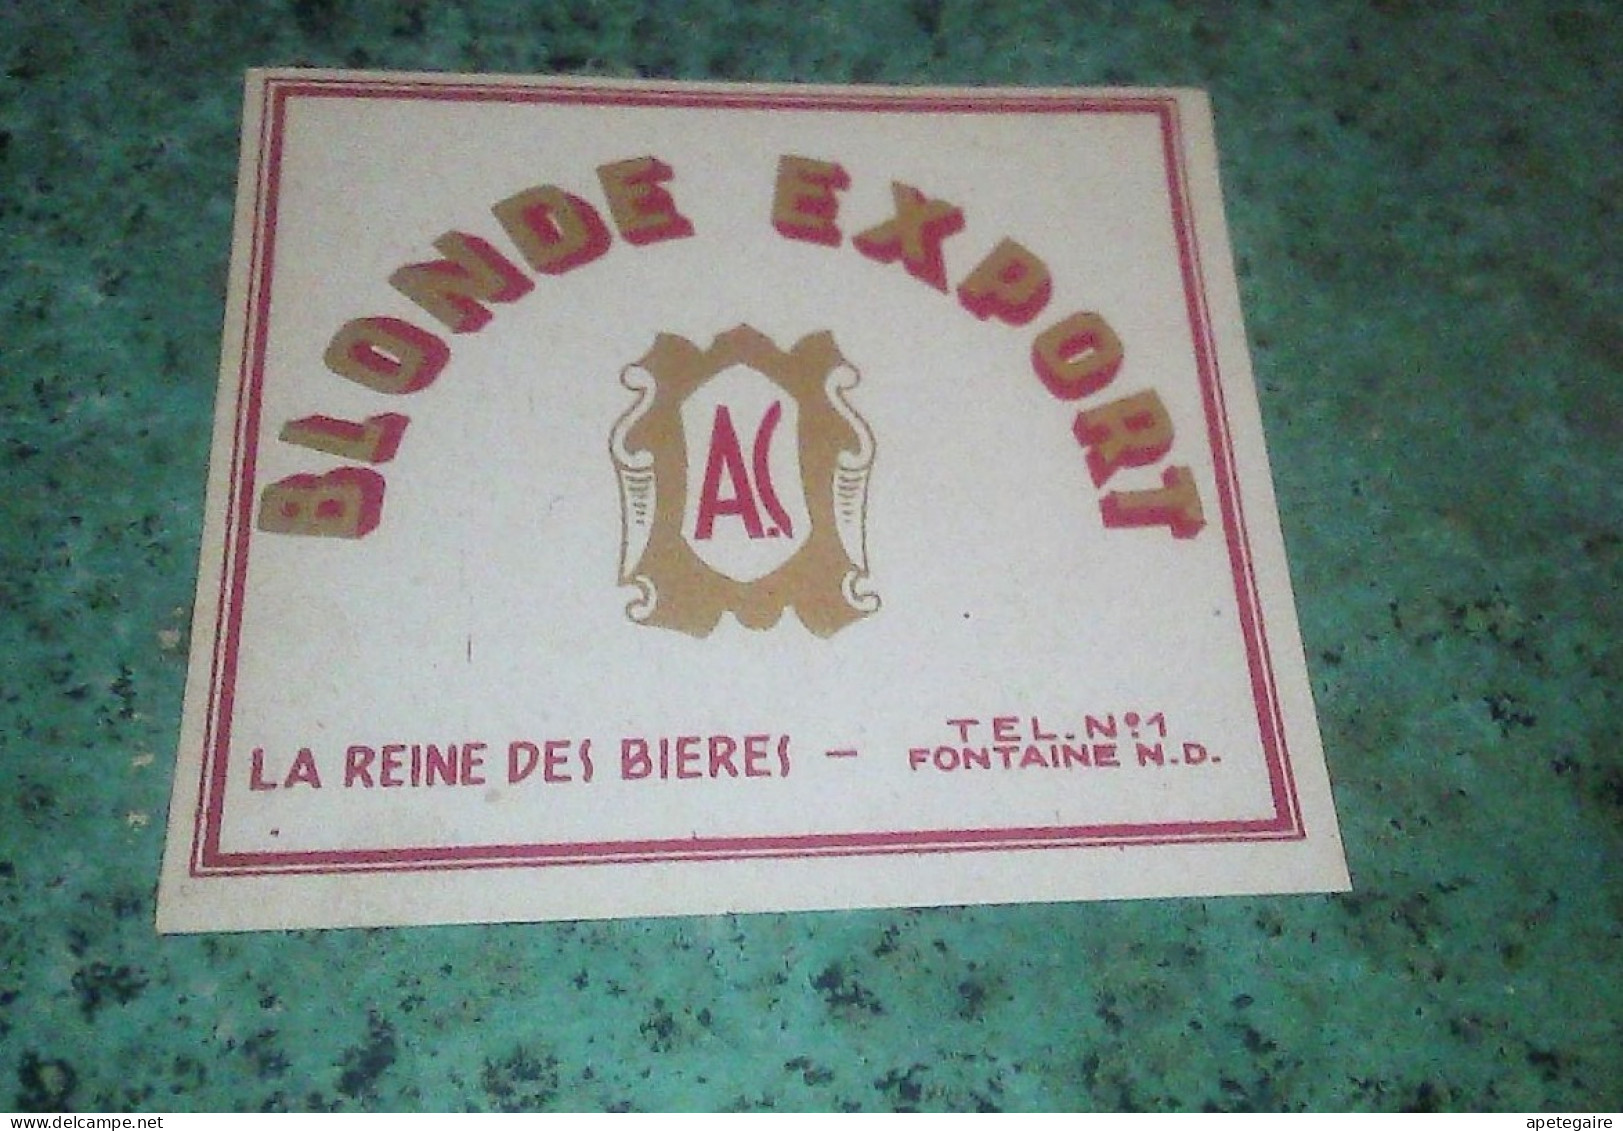 Fontaine Notre-Dame Brasserie A.C.  Ancienne étiquette De Bière Blonde Export La Reine Des Bières - Beer